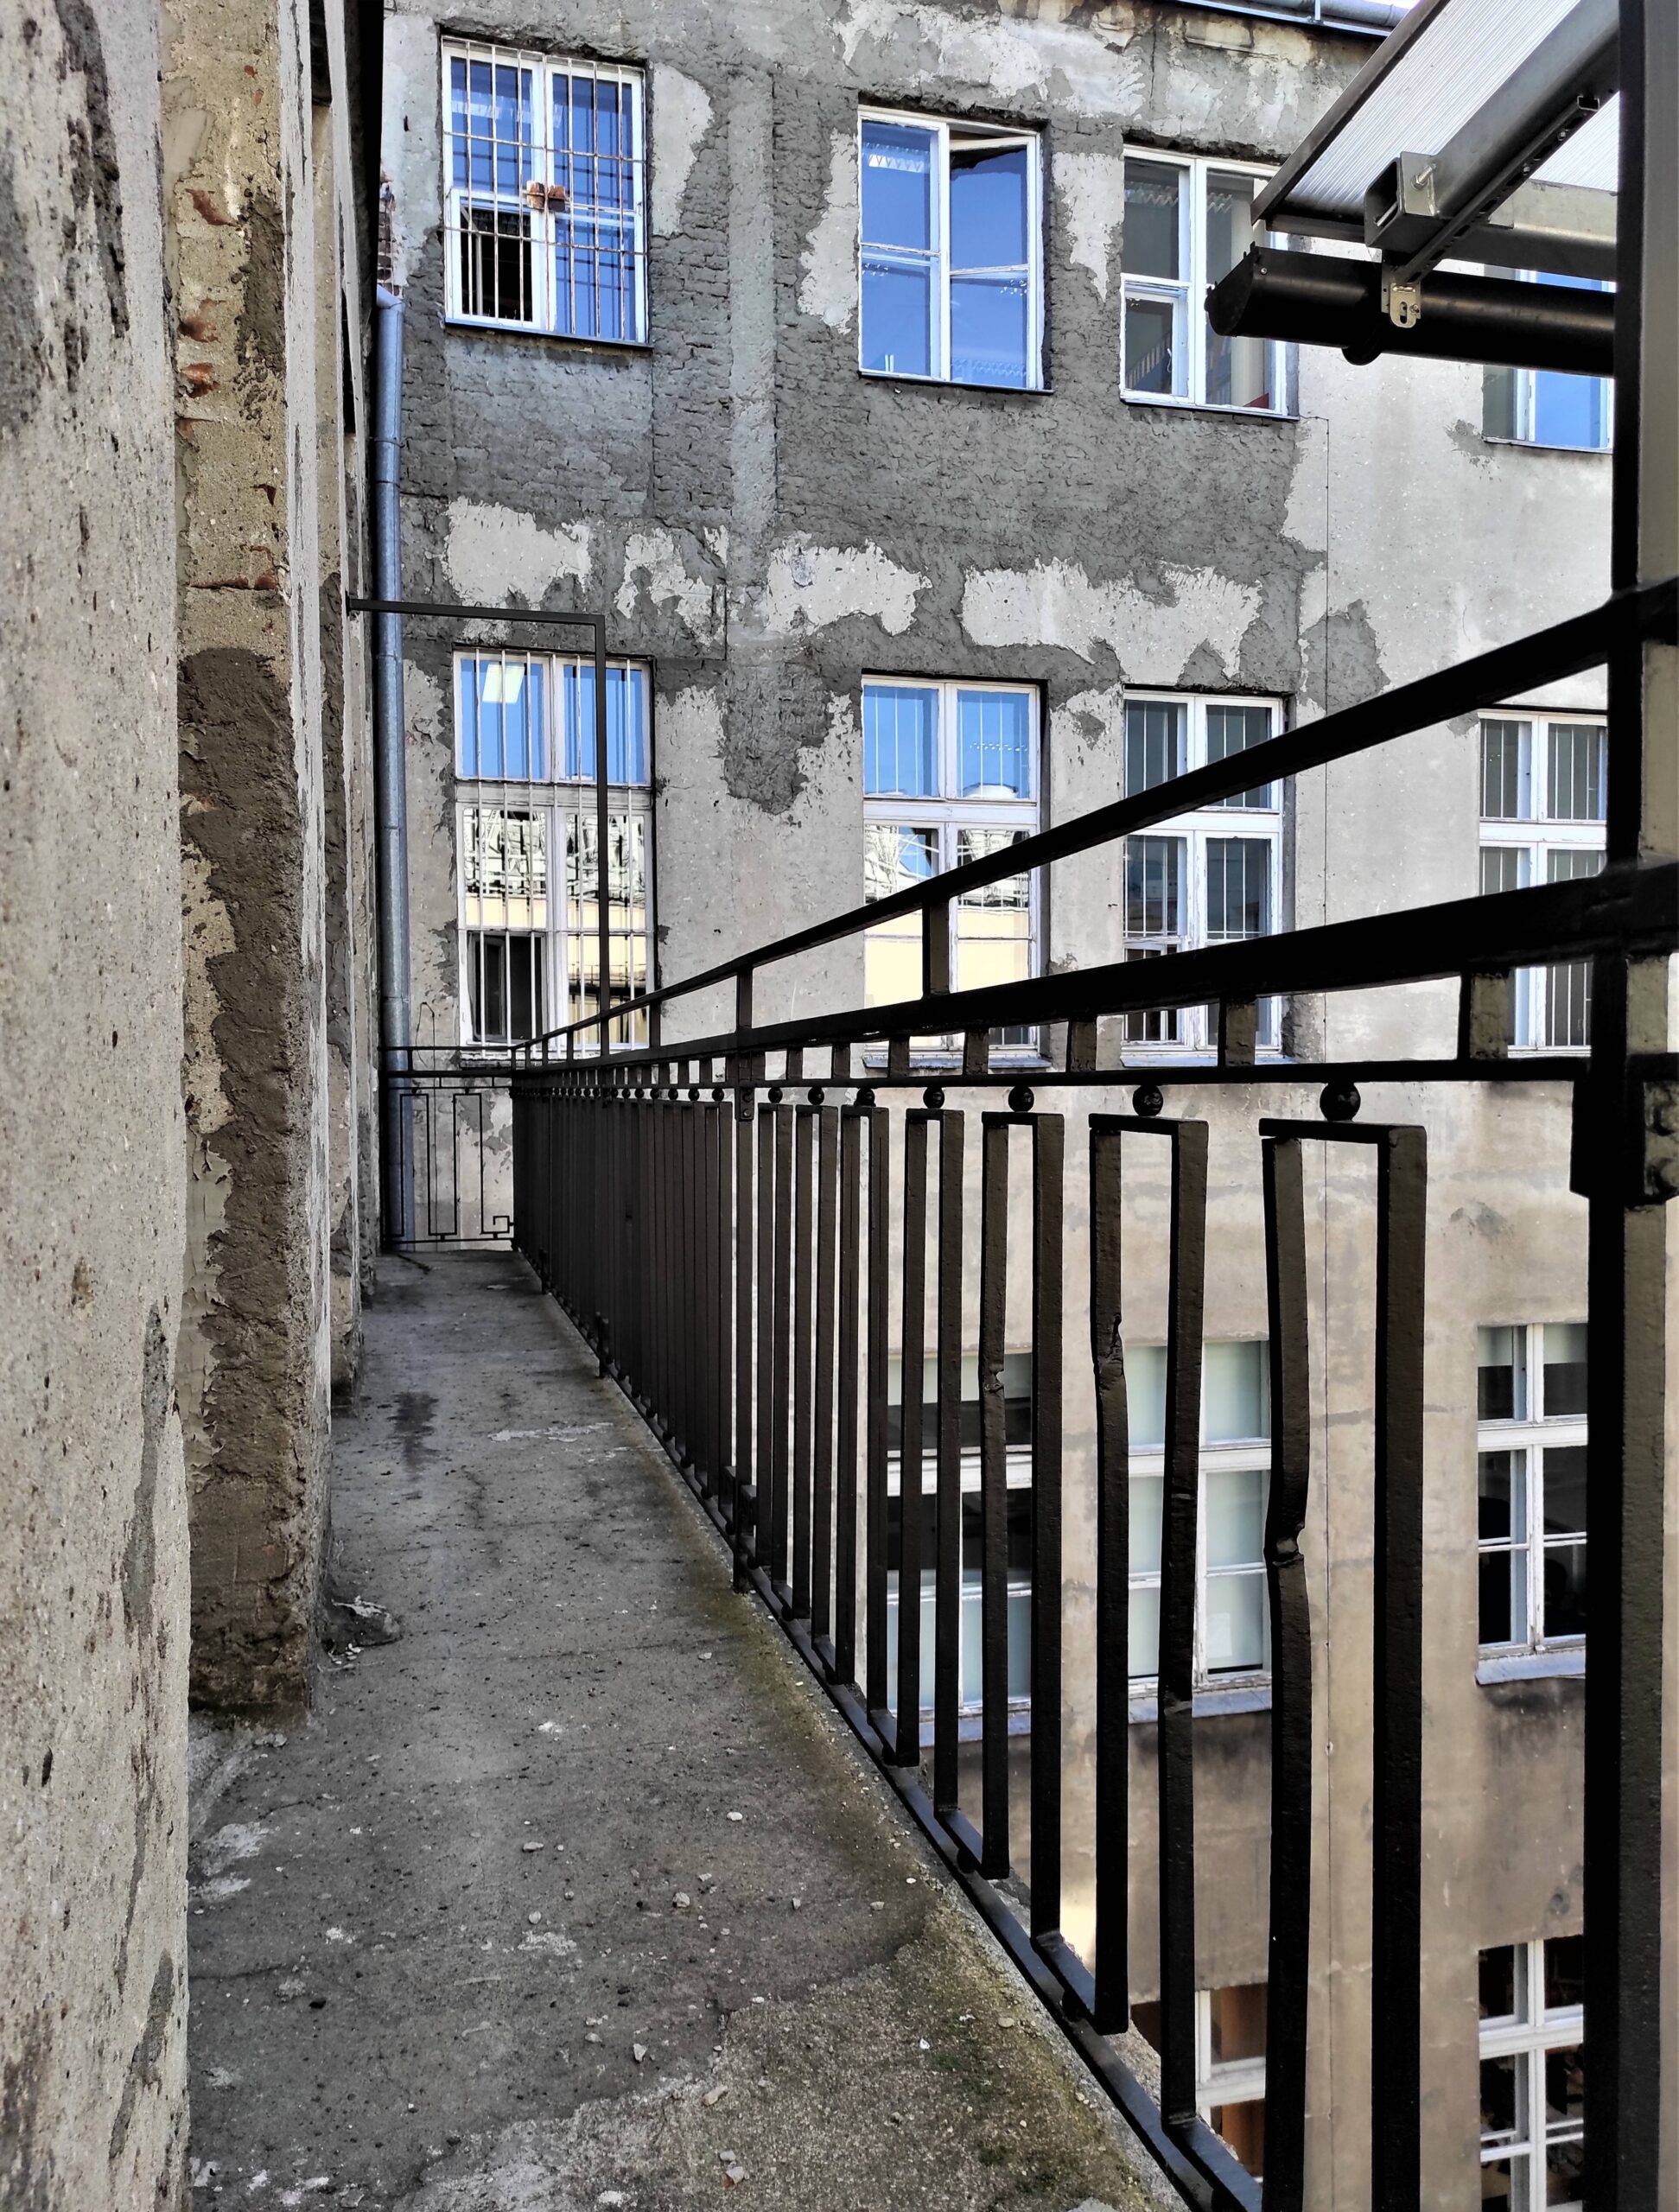 Piętro III-cie. Balustrada balkonu galeriowego - ślady po pociskach. W tle tylna elewacja domu frontowego. Fot. Katarzyna Komar-Michalczyk 2022 r., źródło: AOD III.